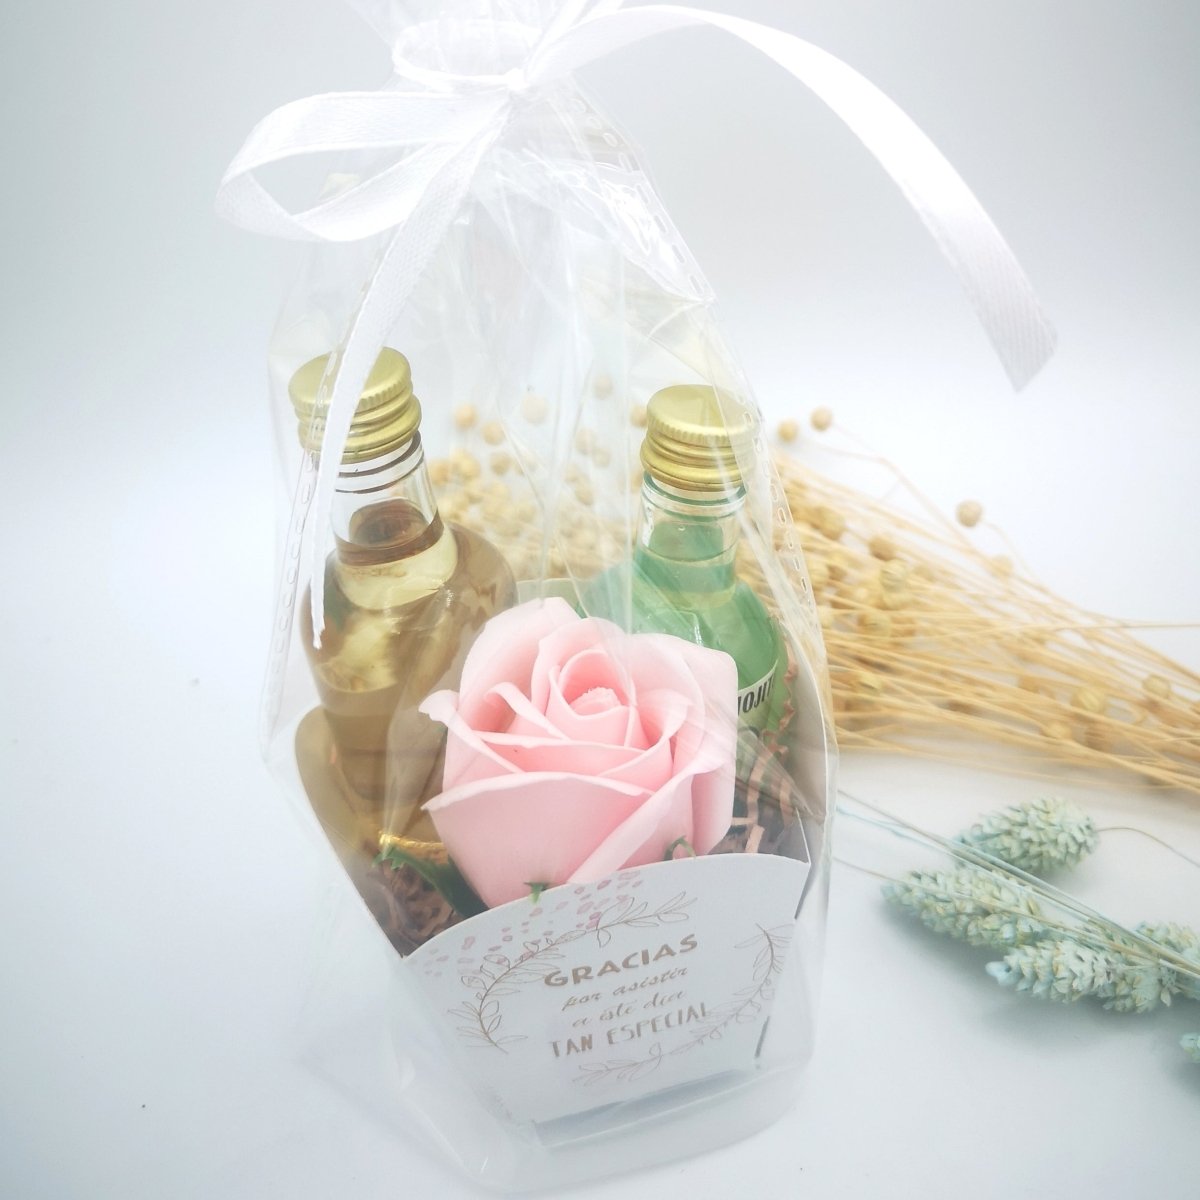 Set minilicores con flor de jabón - Regalos originales personalizados - DE MOI À TOI |DMAT